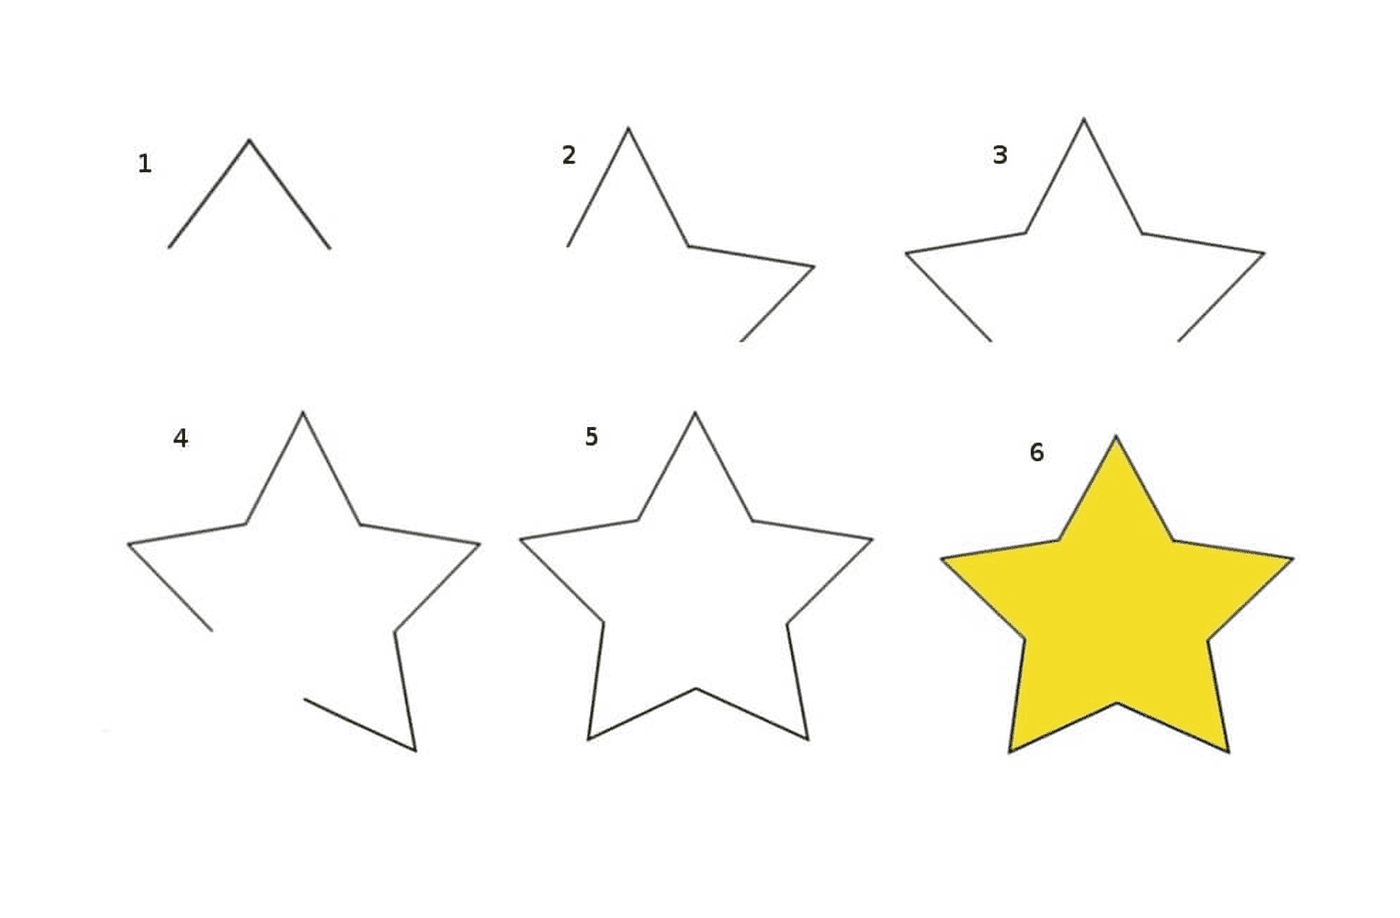  Cinco formas diferentes de estrelas amarelas 